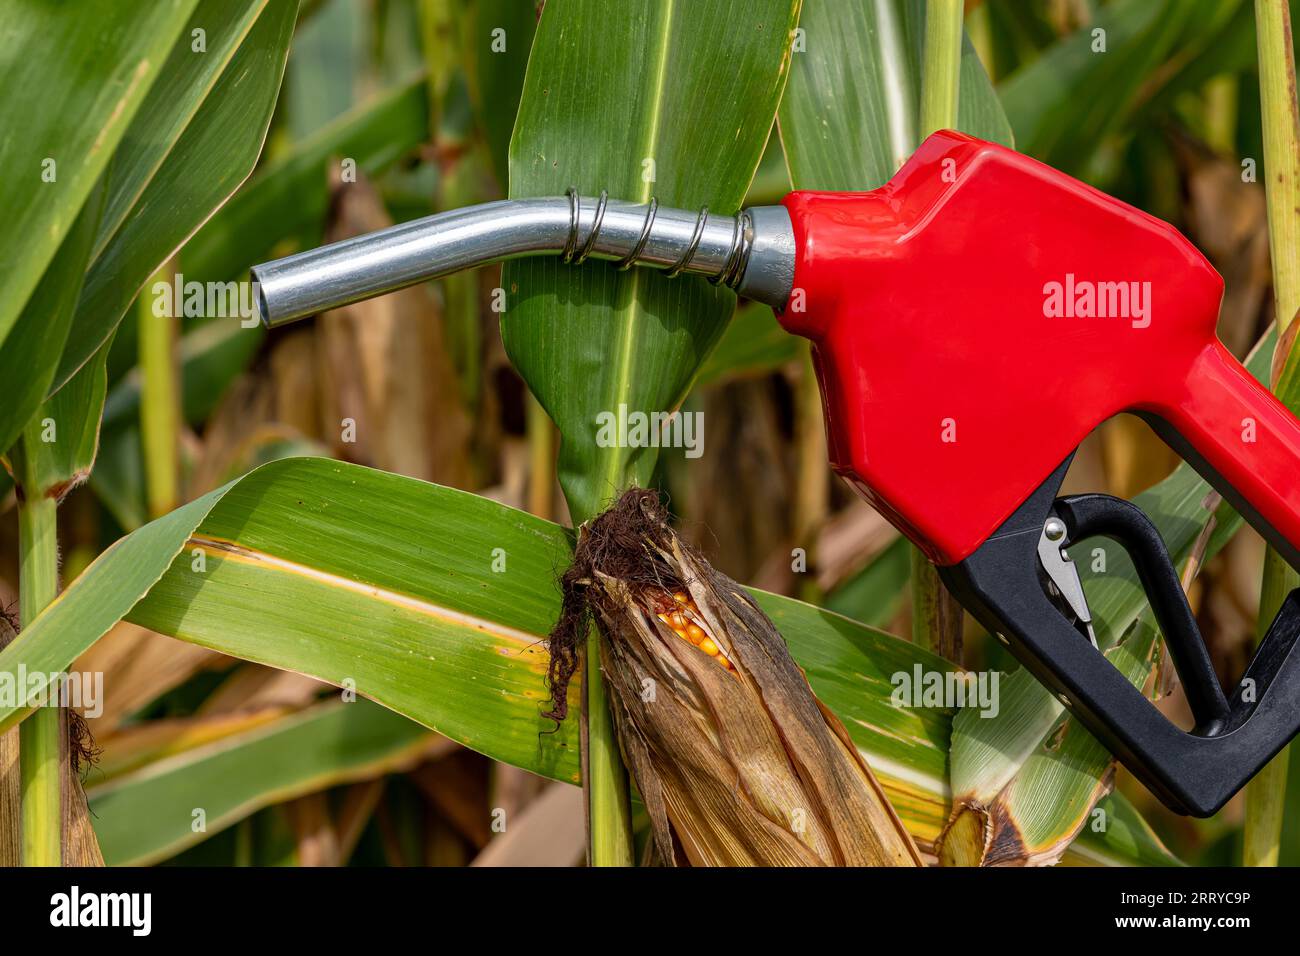 Ethanolbenzin-Kraftstoffdüse mit Maiskolben im Maisfeld. Konzept der Beimischung von Biokraftstoffen, Landwirtschaft und Ethanol. Stockfoto